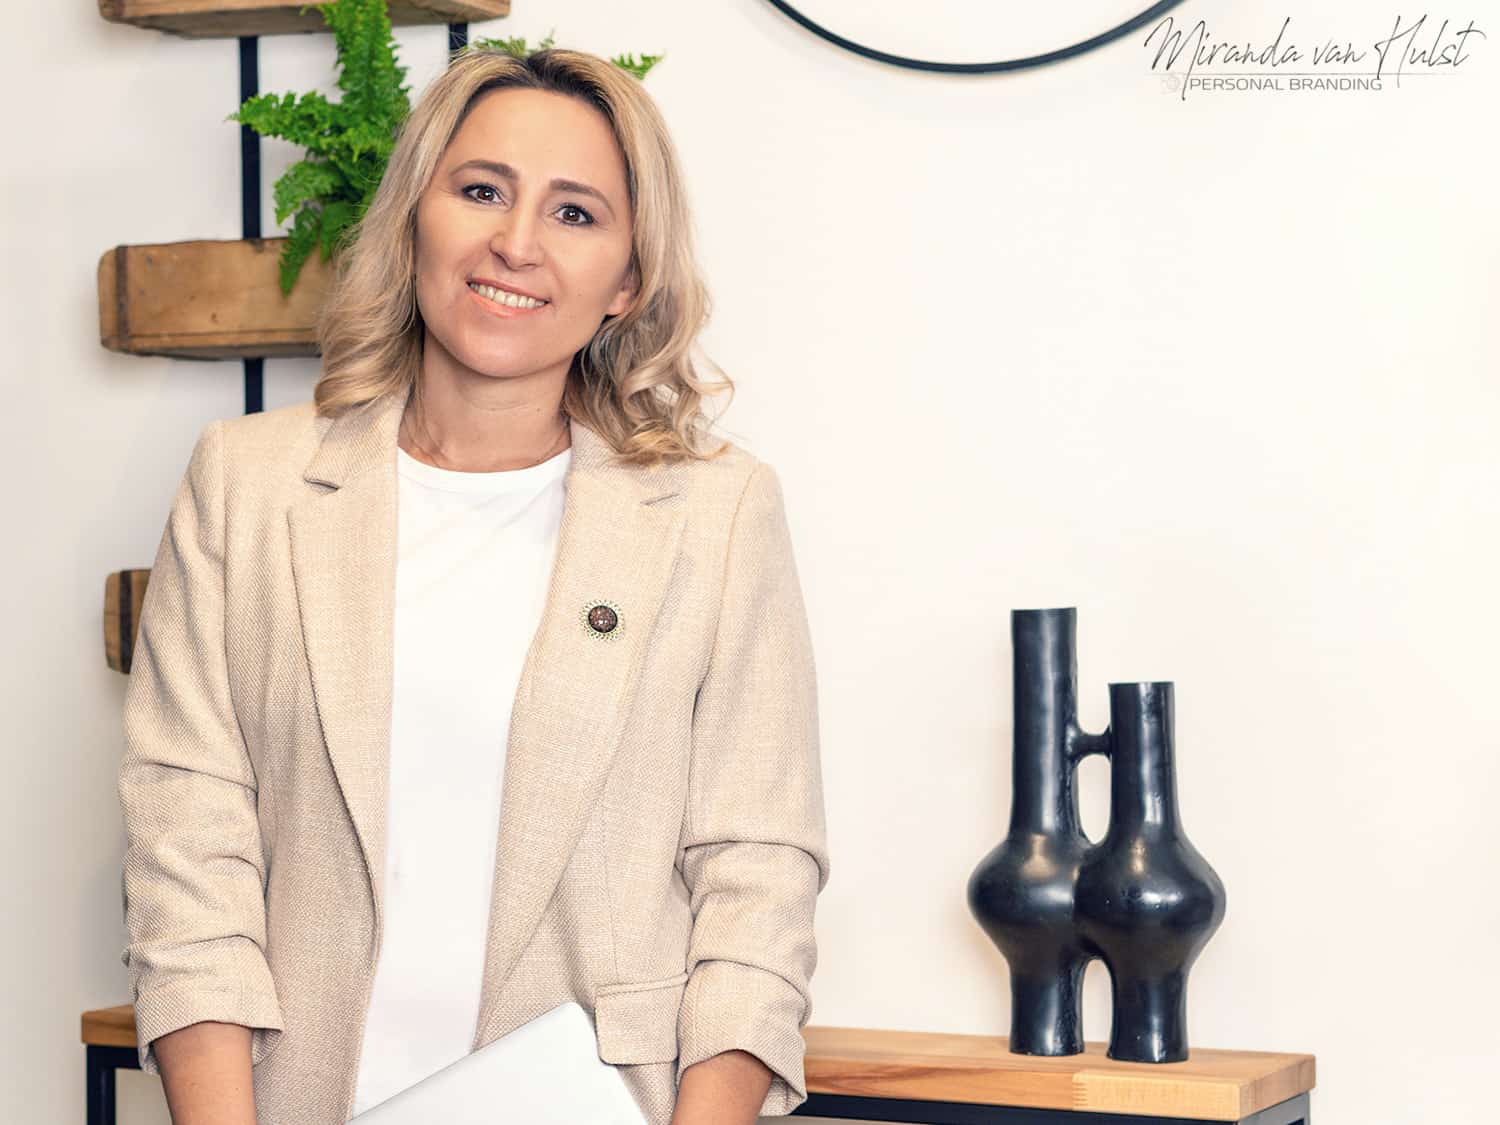 Personal Branding zakenvrouw door Miranda van Hulst